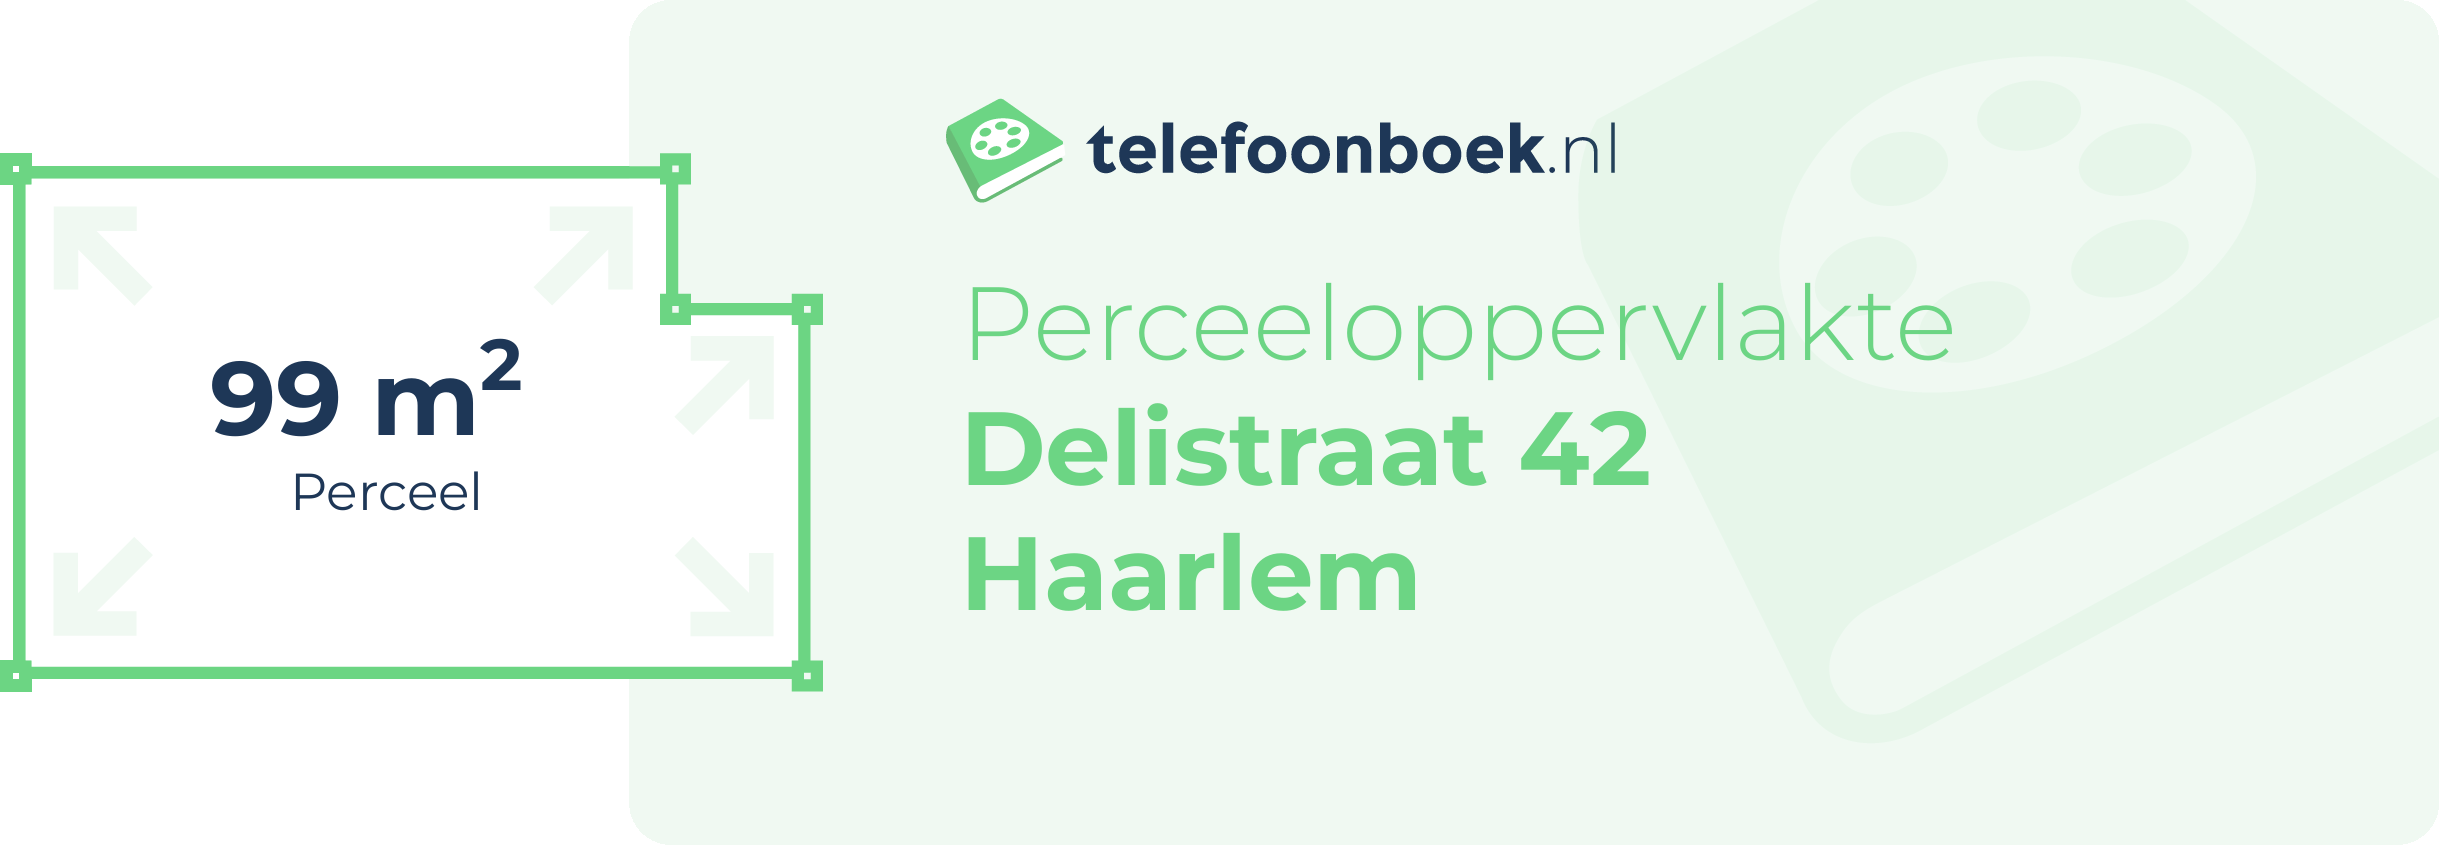 Perceeloppervlakte Delistraat 42 Haarlem